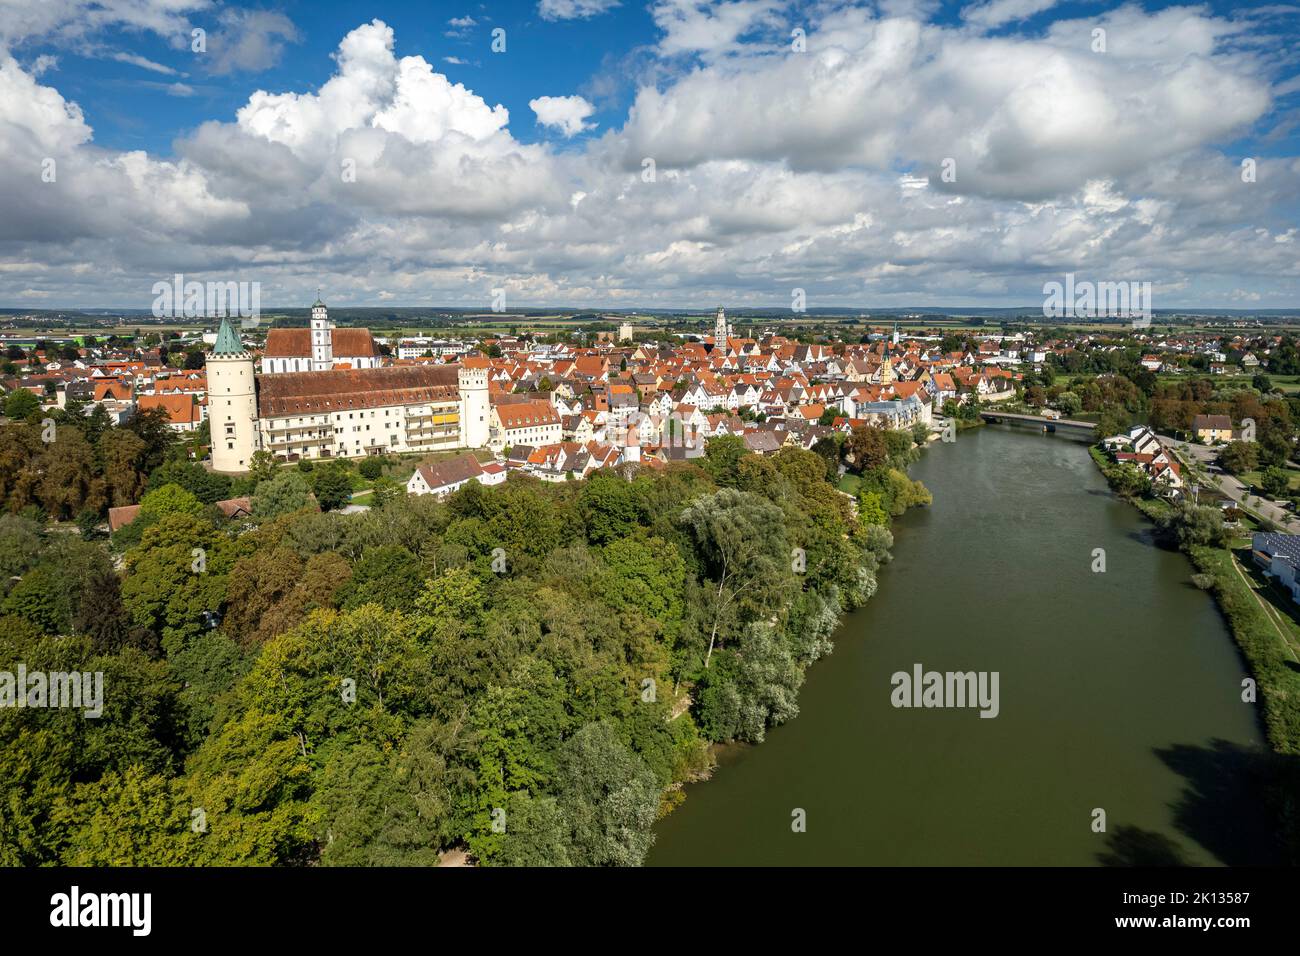 Luftbild Lauingen an der Donau, Bayern, Allemagne | vue aérienne de Lauingen sur le Danube, Bavière, Allemagne Banque D'Images